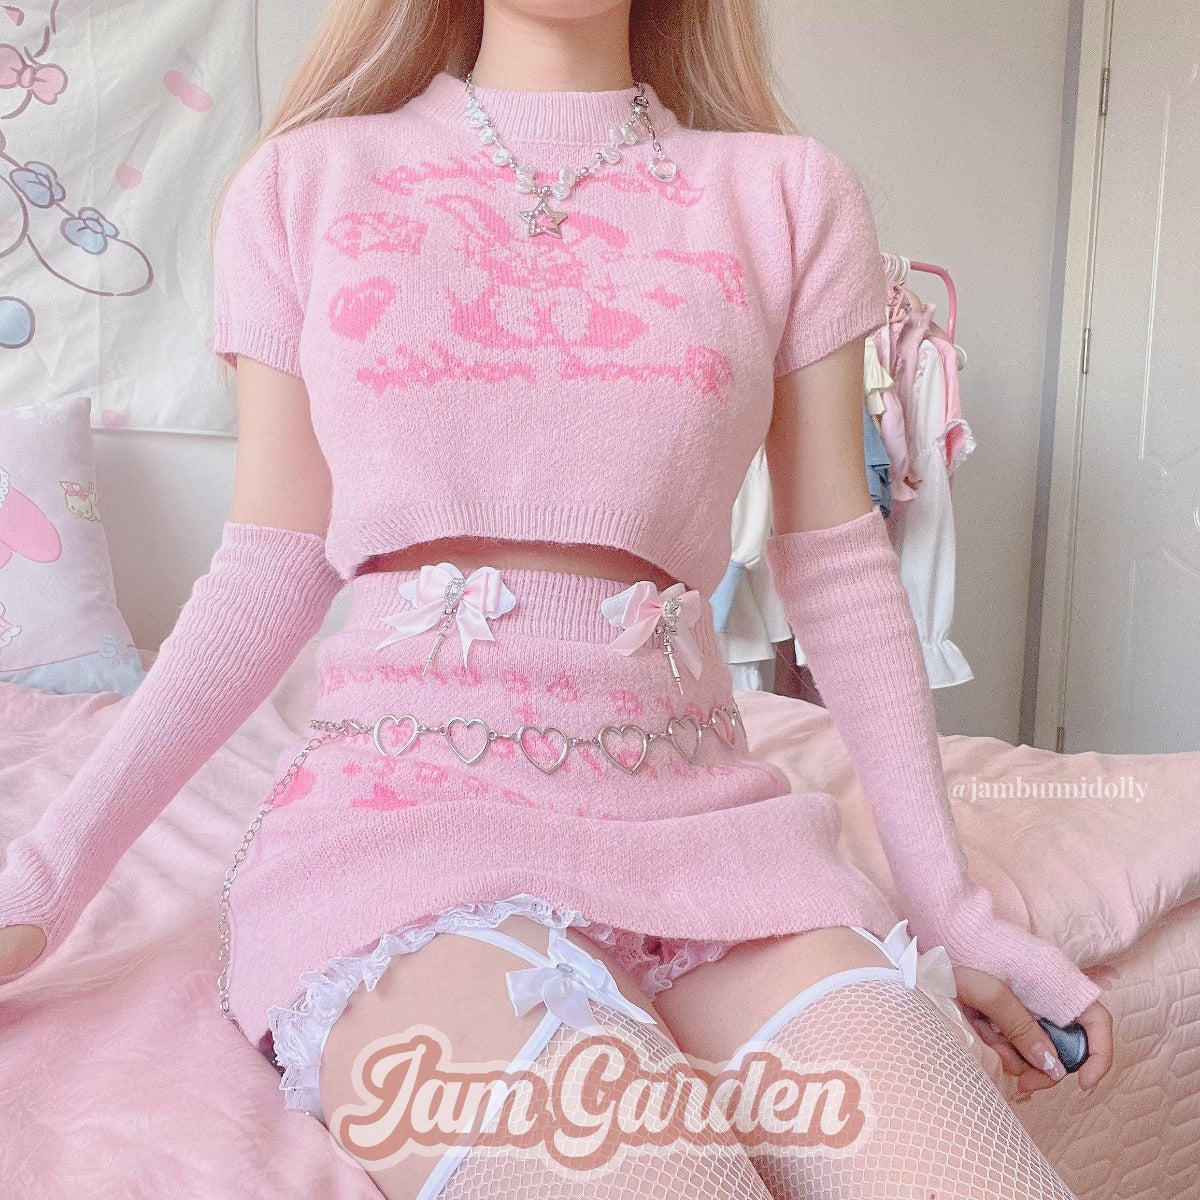 [Garden Bunny] Sweet Knit Top Skirt Set - Jam Garden